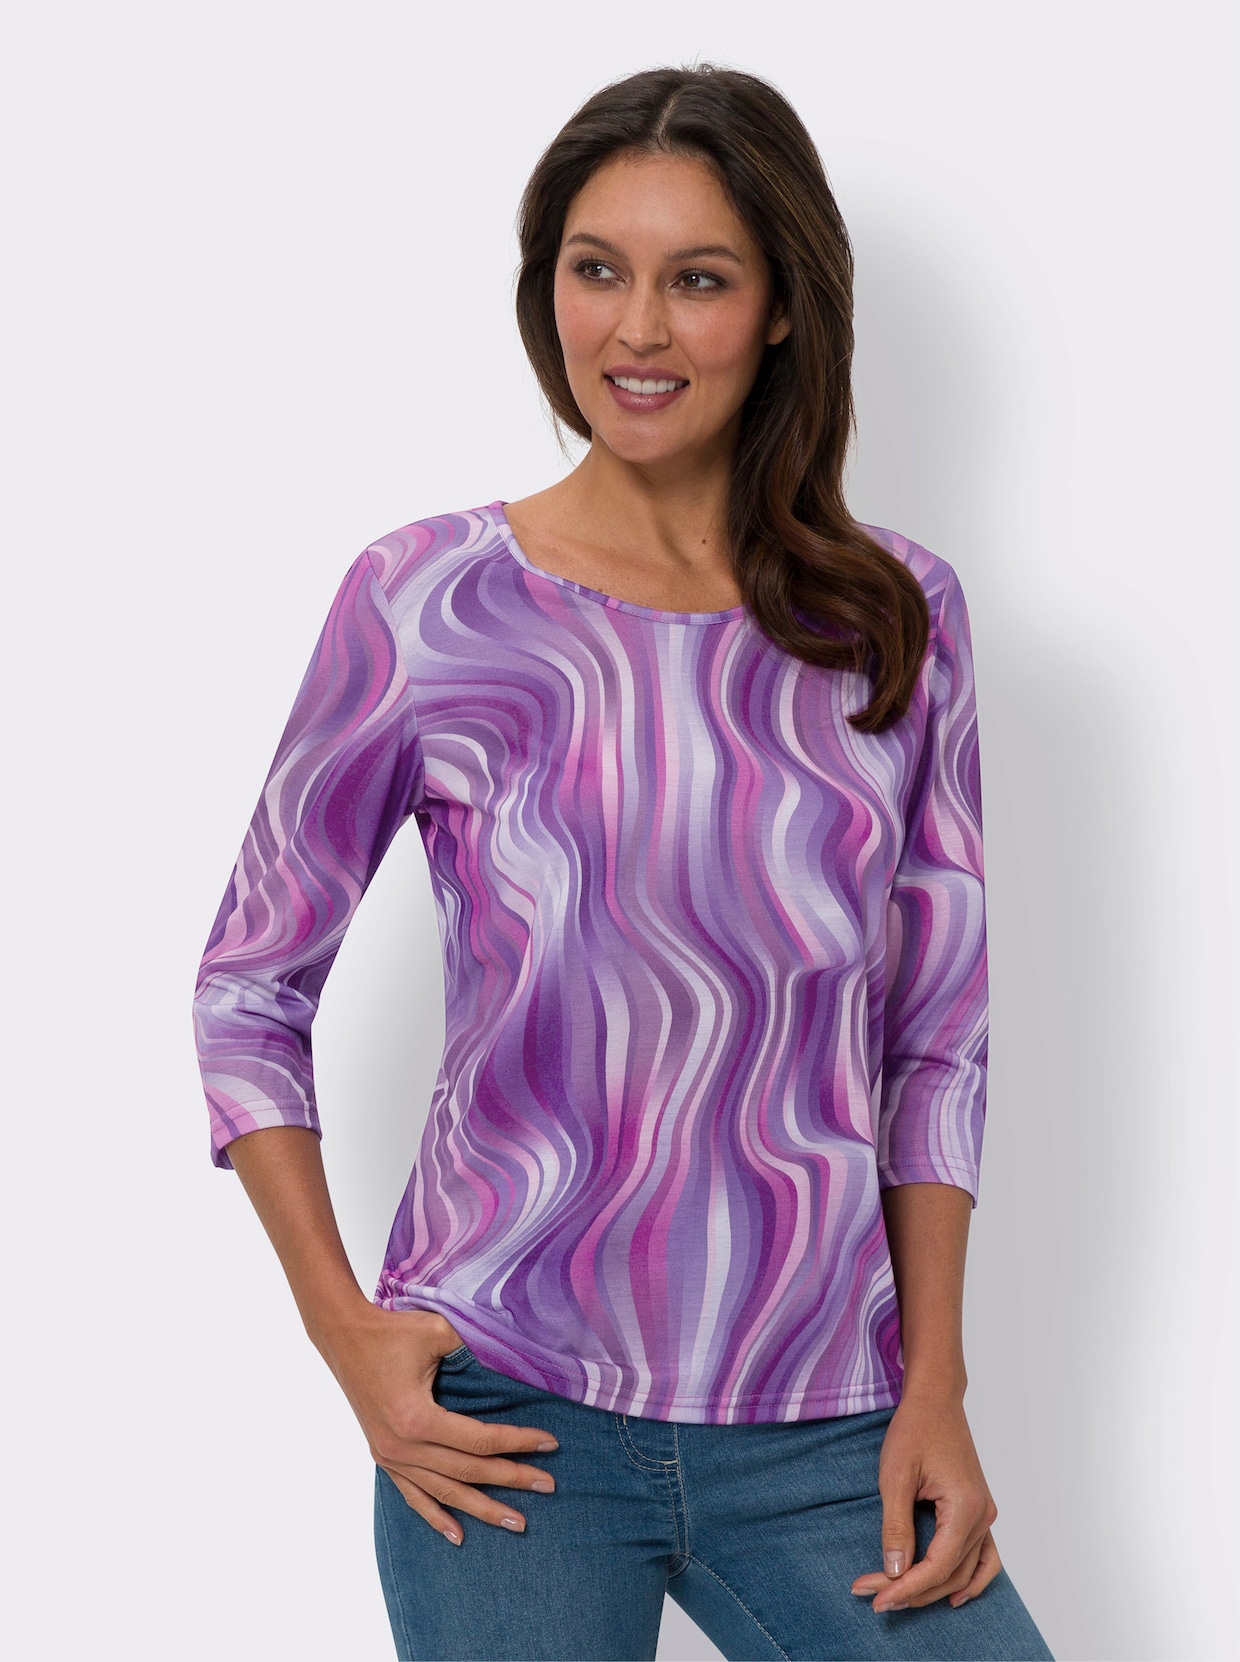 Tričko s dlhými rukávmi - fialovo-purpurová potlač